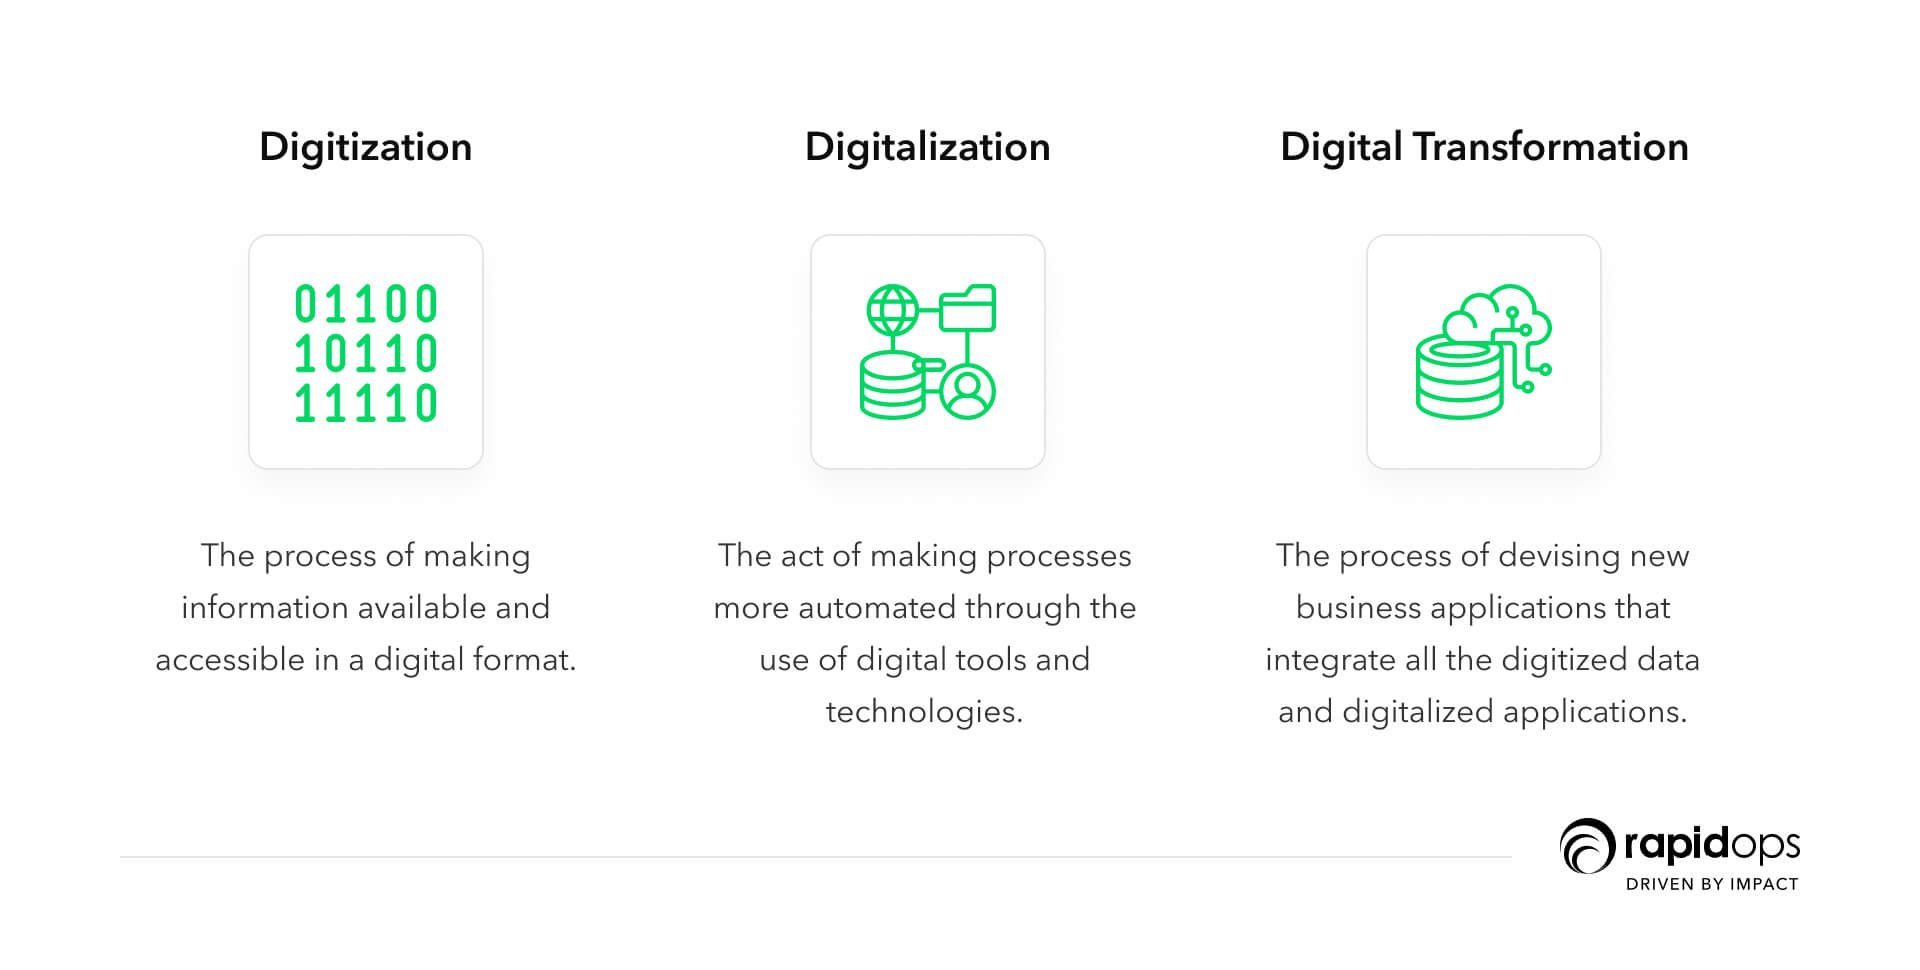 digitization, digitalization, and digital transformation